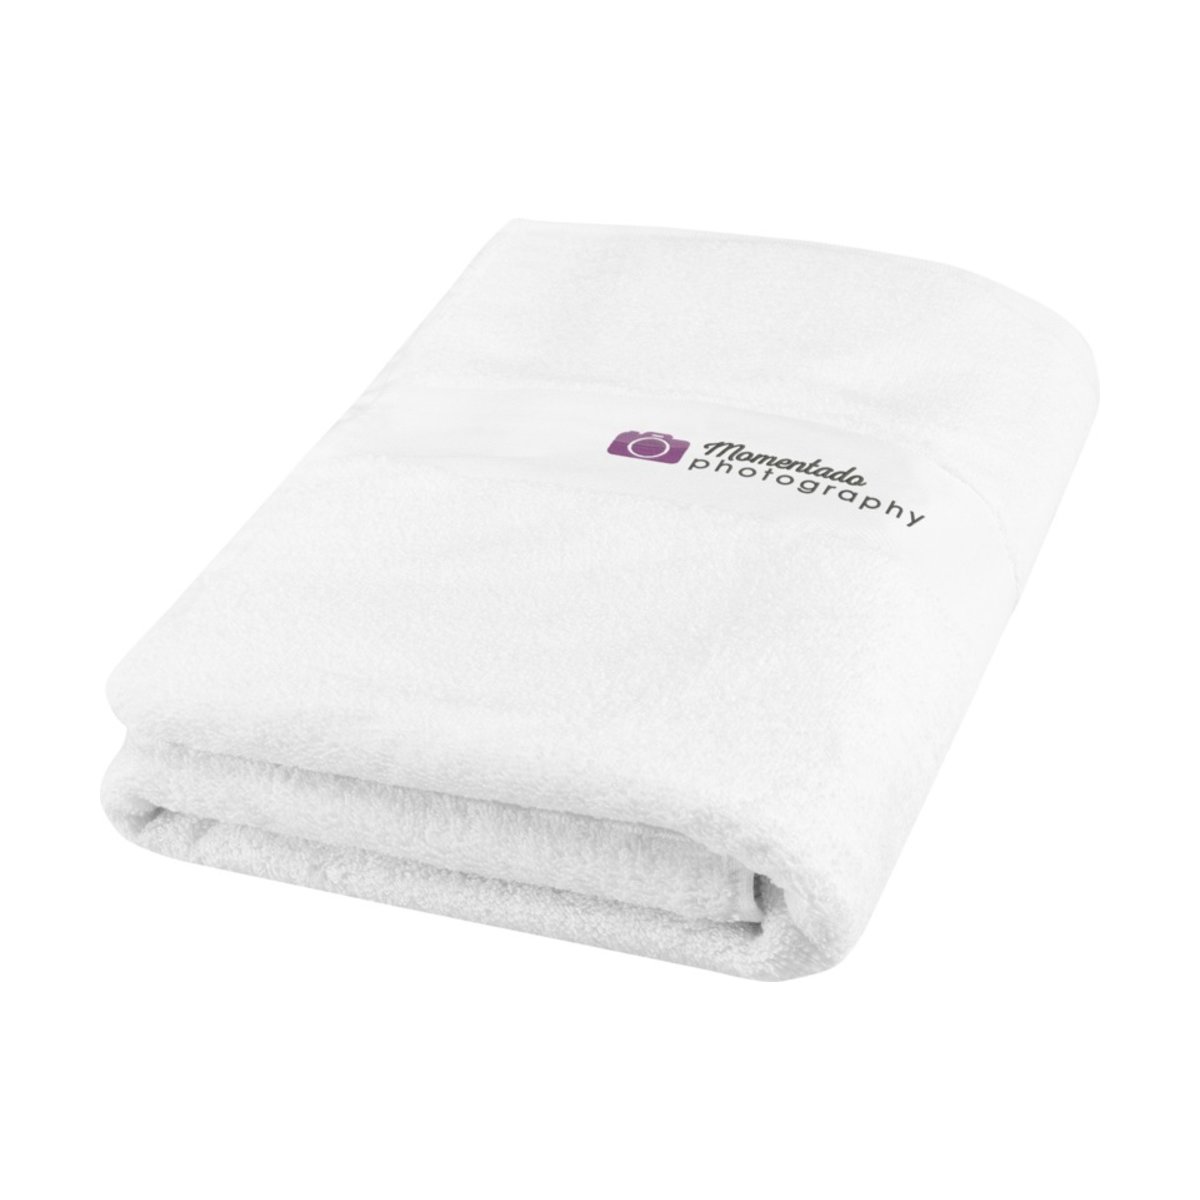 Amelia bawełniany ręcznik kąpielowy o gramaturze 450 g/m² i wymiarach 70 x 140 cm